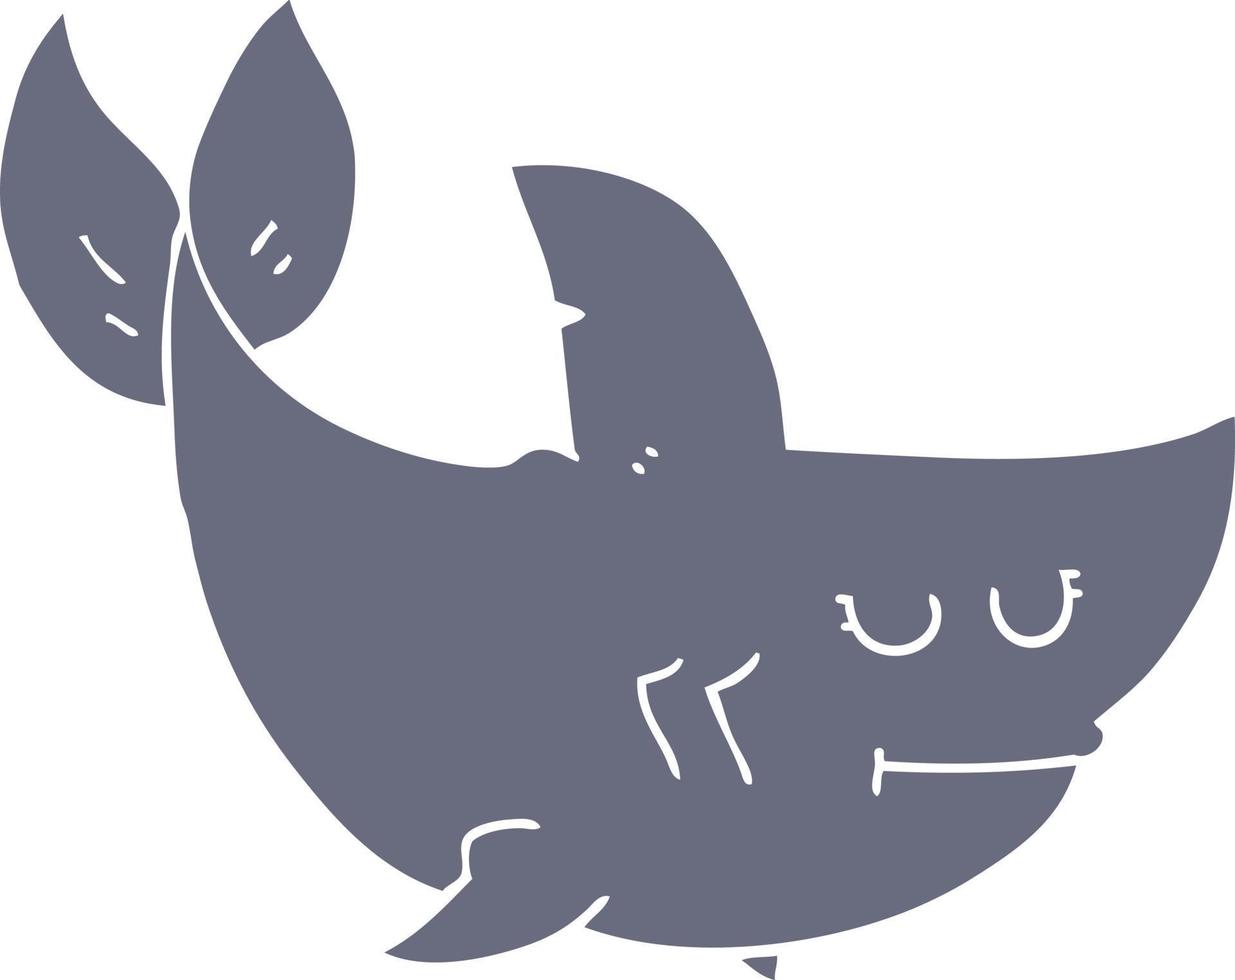 requin de dessin animé de style plat couleur vecteur